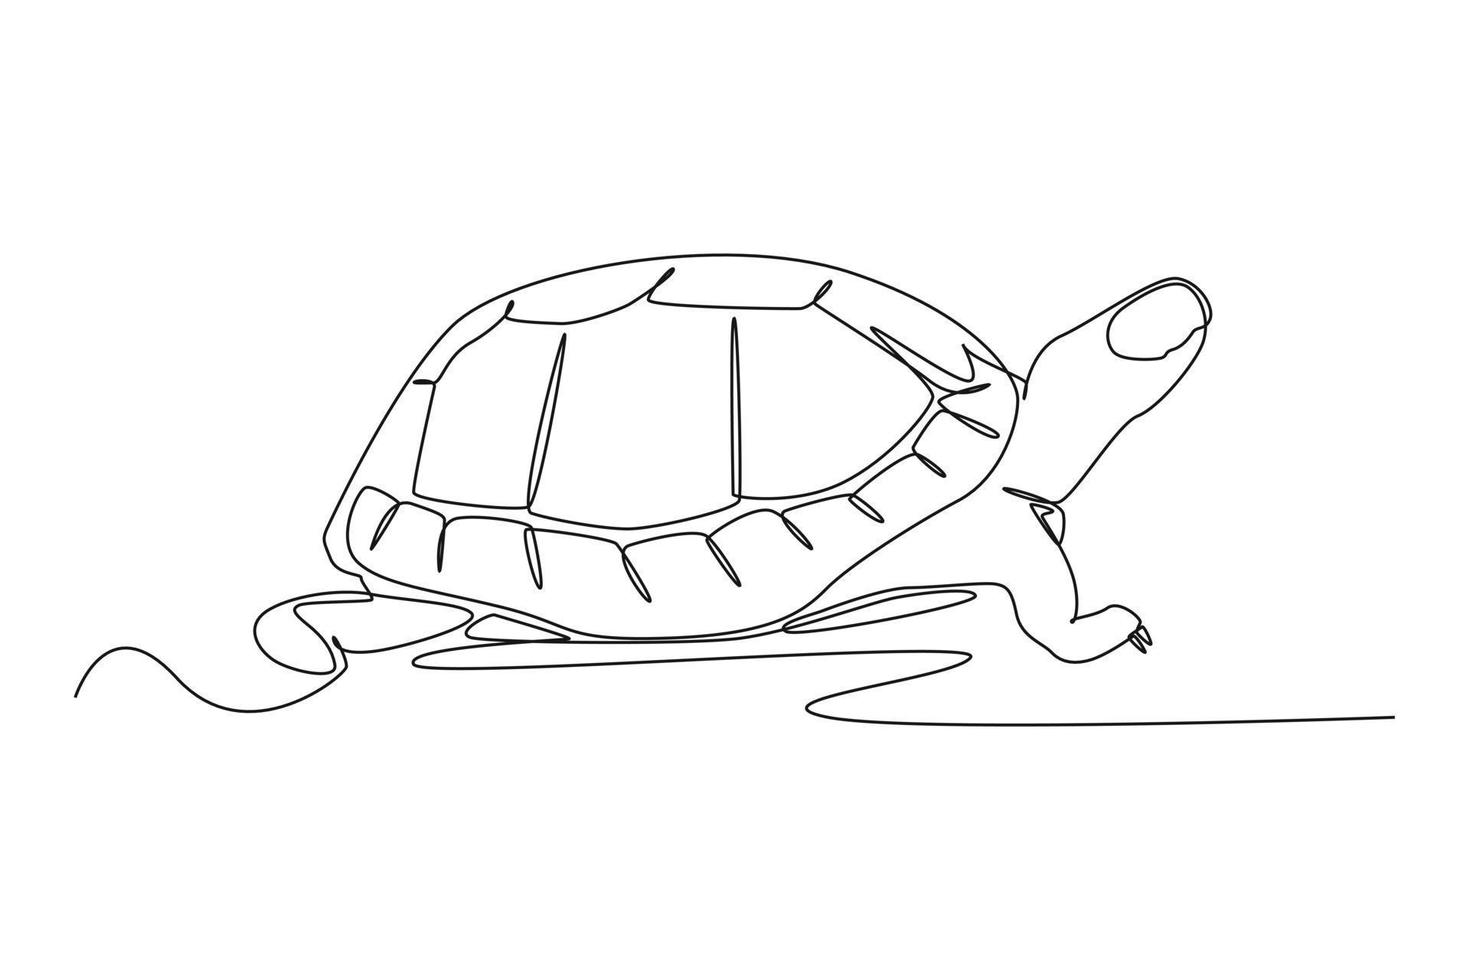 doorlopend een lijn tekening een schildpad was kruipen Aan de grond. dieren concept single lijn trek ontwerp grafisch vector illustratie